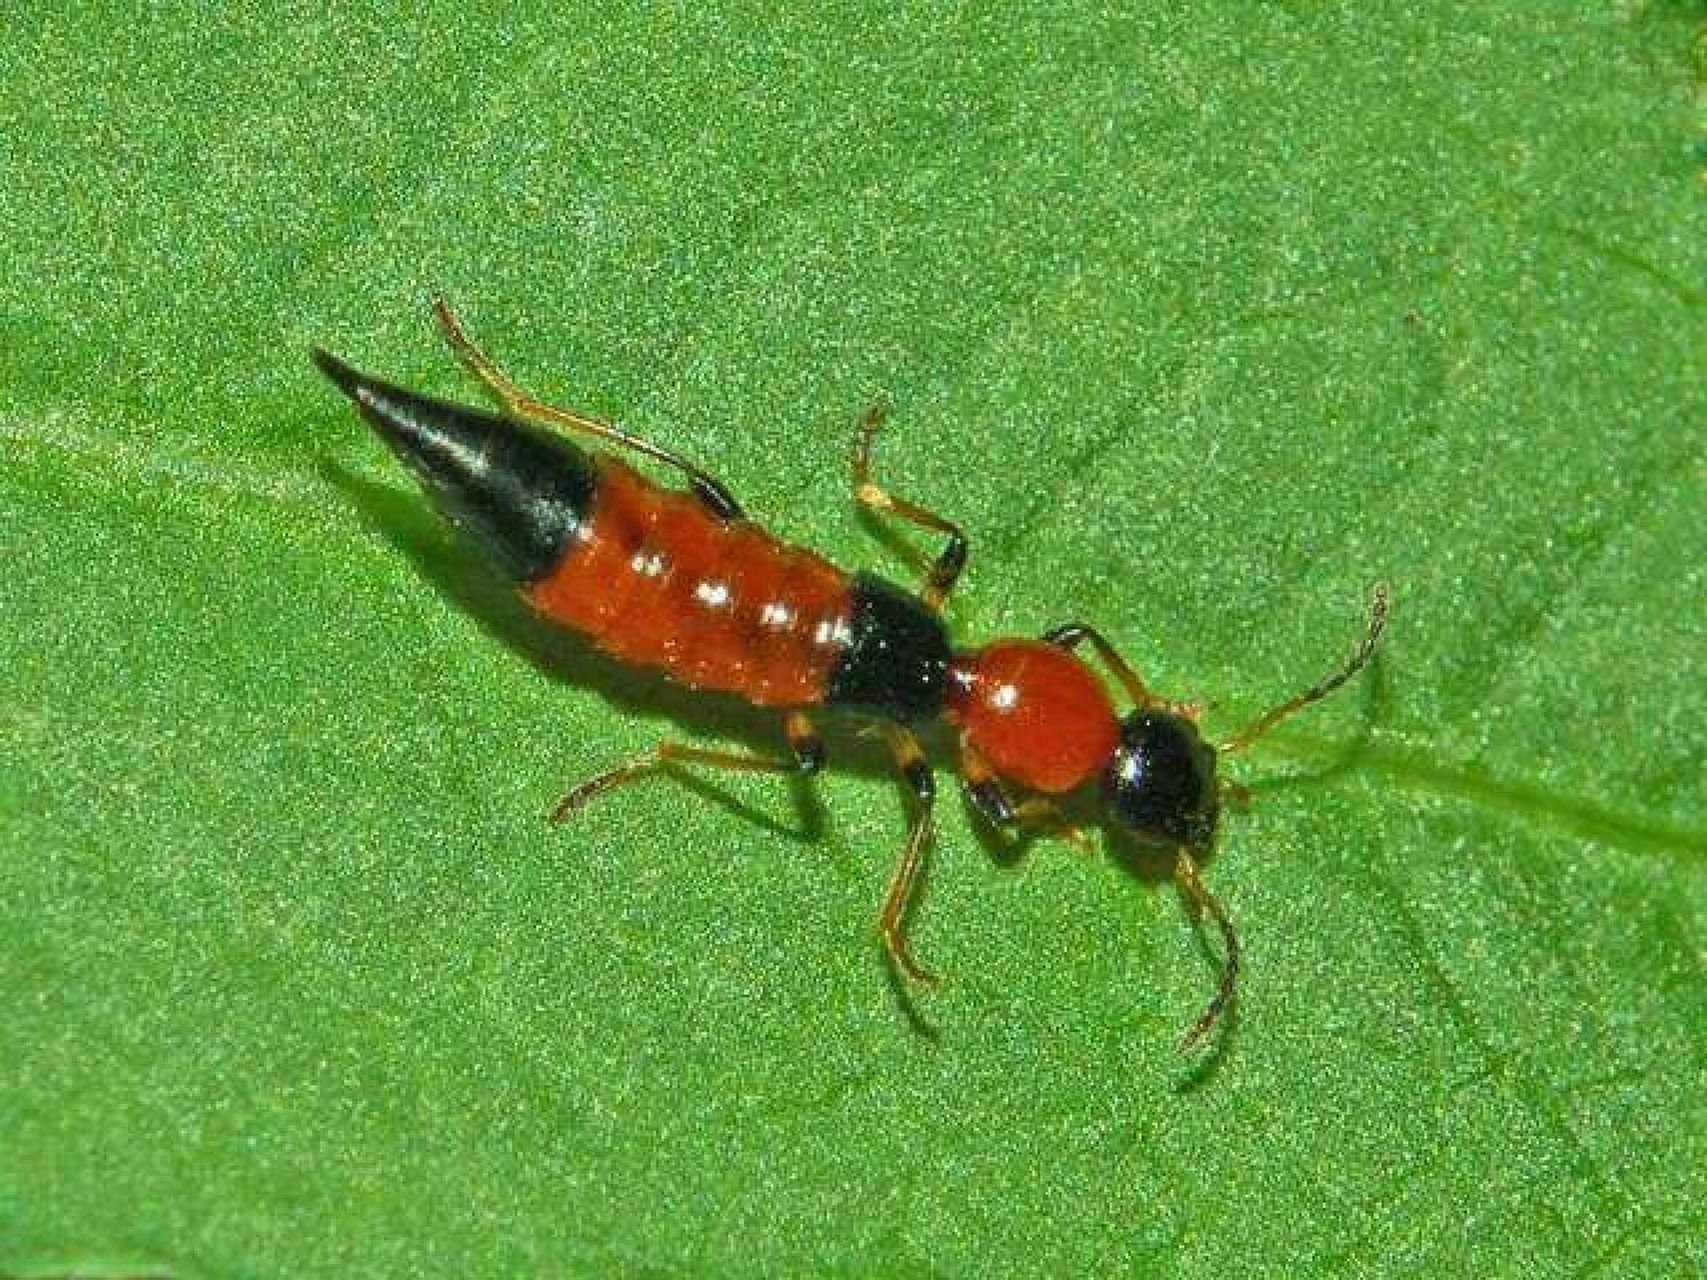 隐翅虫(rove beetle)又被称为影子虫,青腰虫,是鞘翅目隐翅虫科